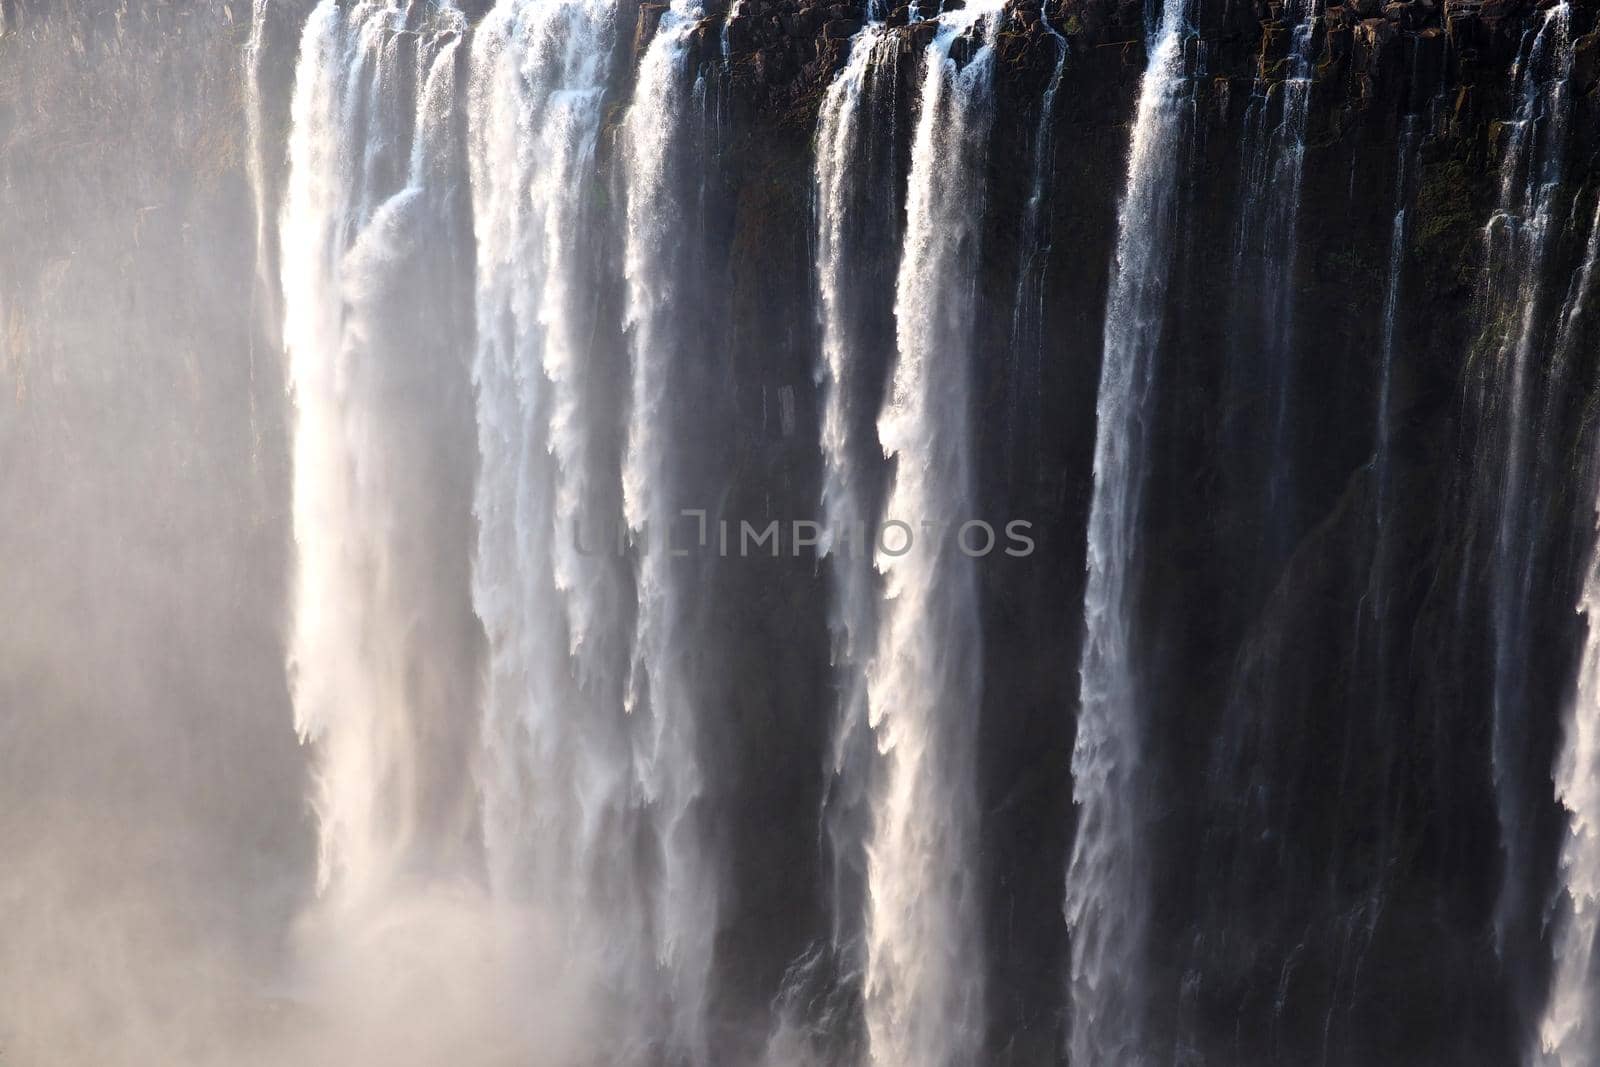 Victoria Falls on the Zambezi River between Zimbabwe and Zambia by fivepointsix